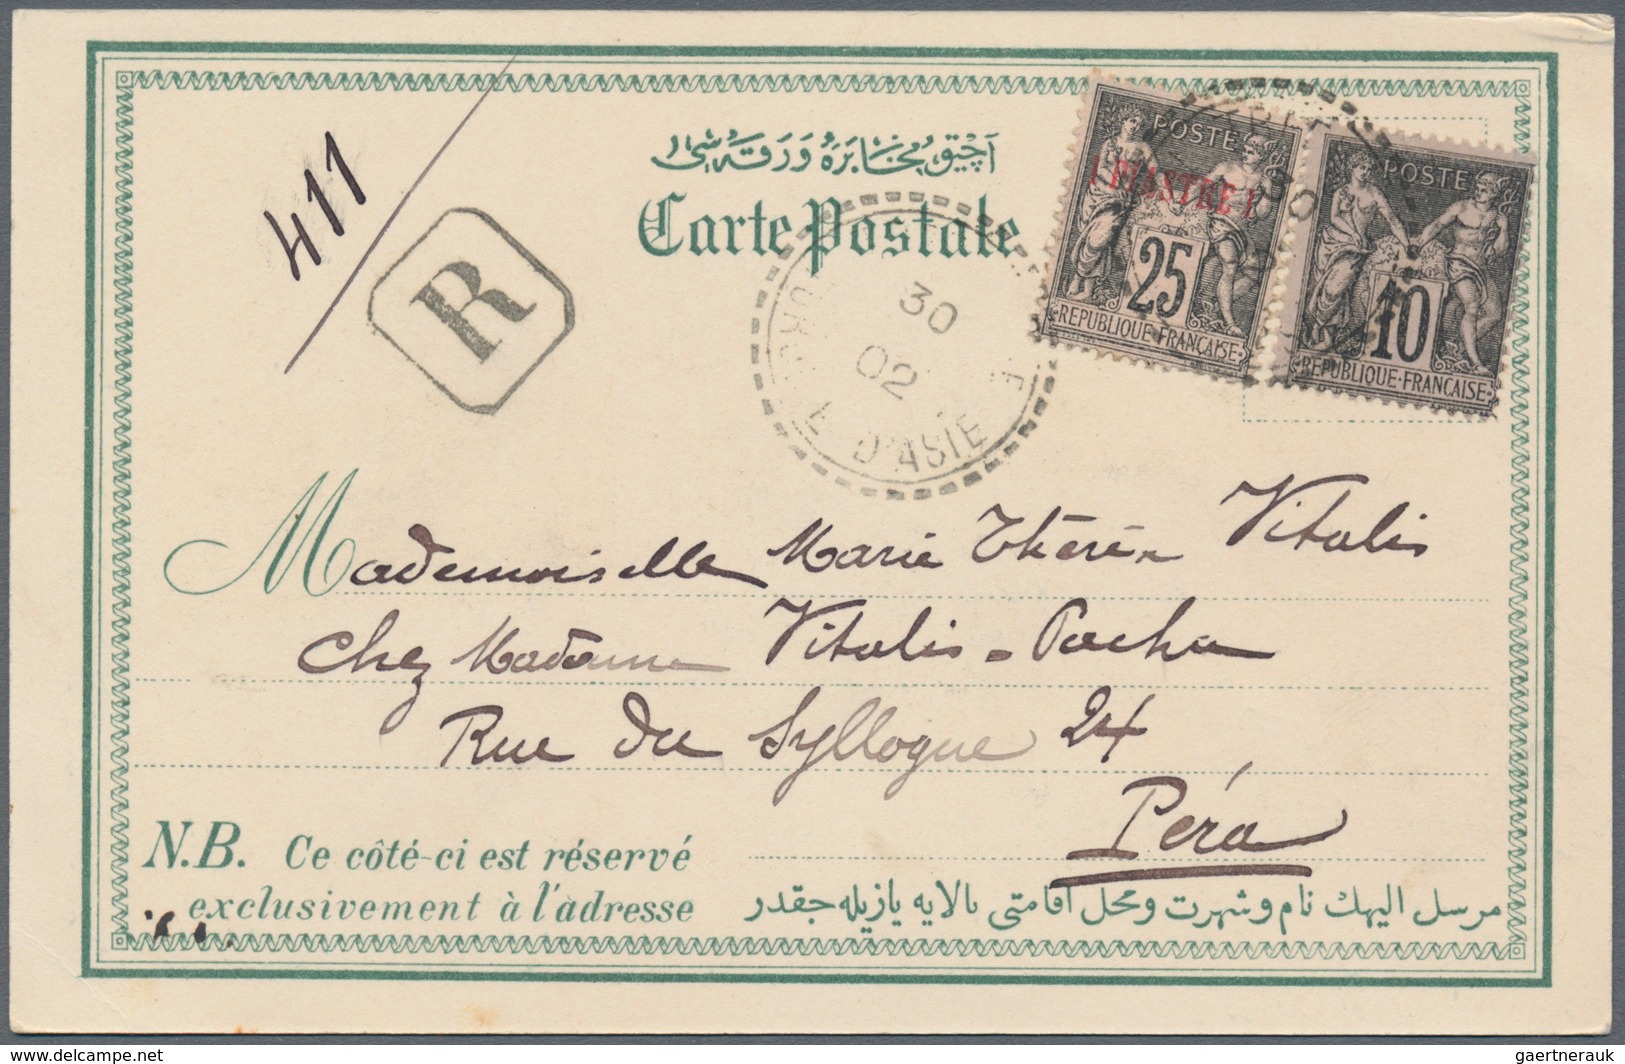 Französische Post in der Levante: 1902, Trebizonde (Trapezunt, Trabzon), three registered ppc (city